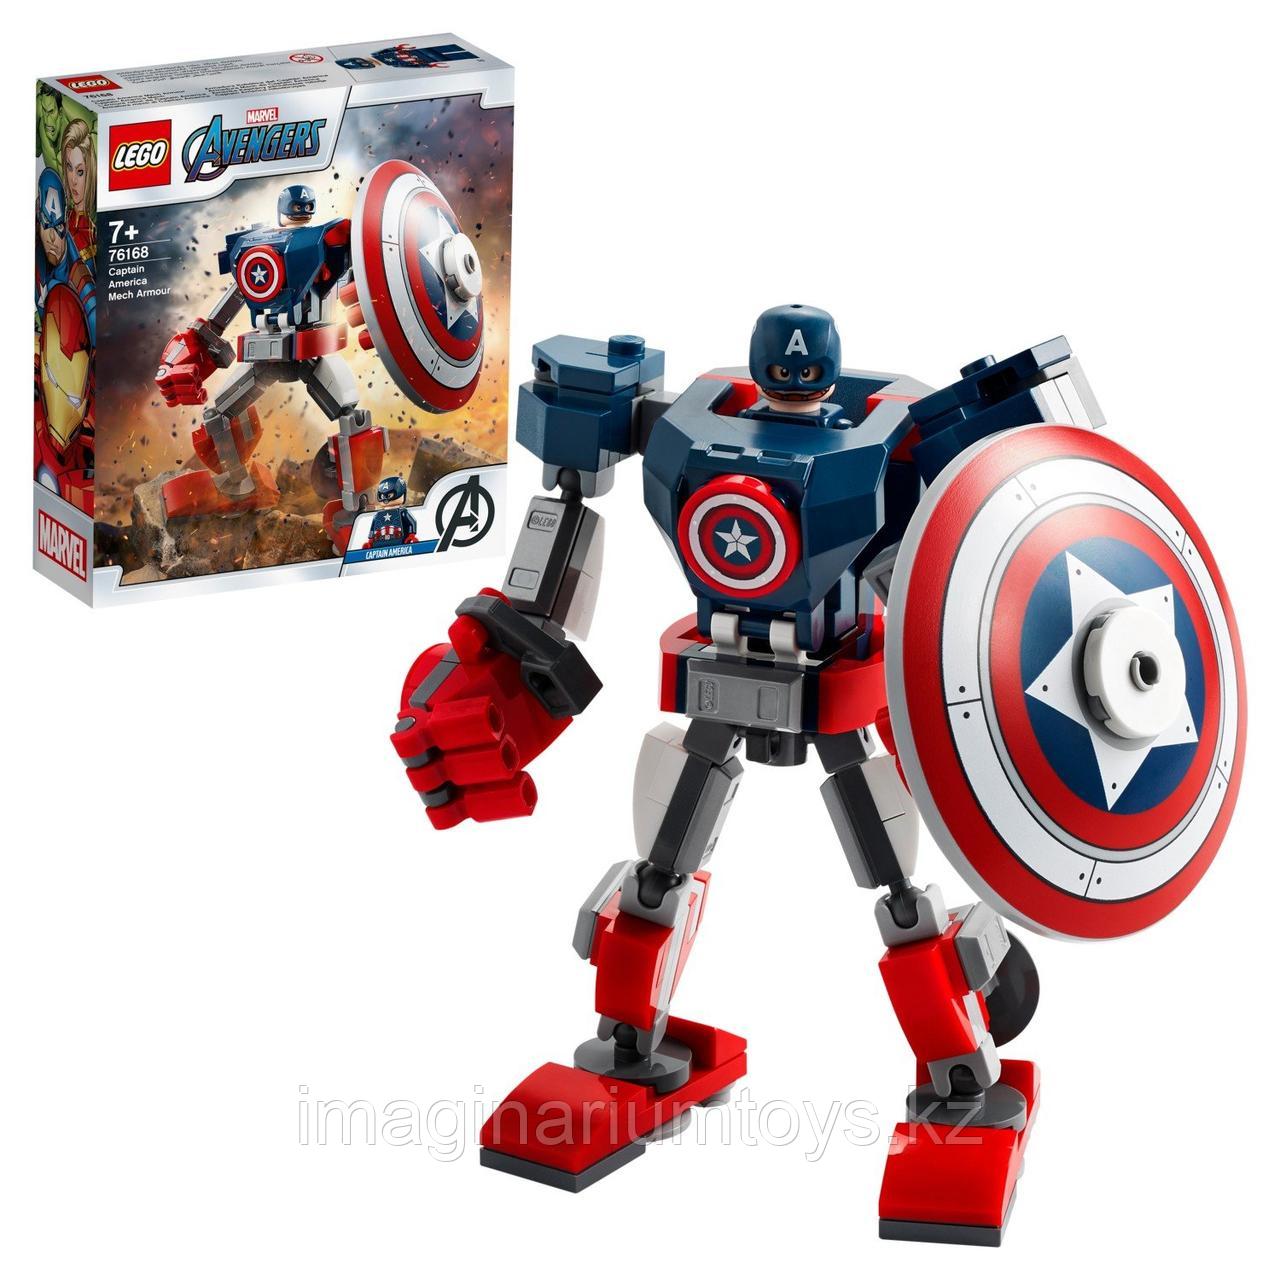 Конструктор LEGO Супер Герои «Капитан Америка Робот», фото 1